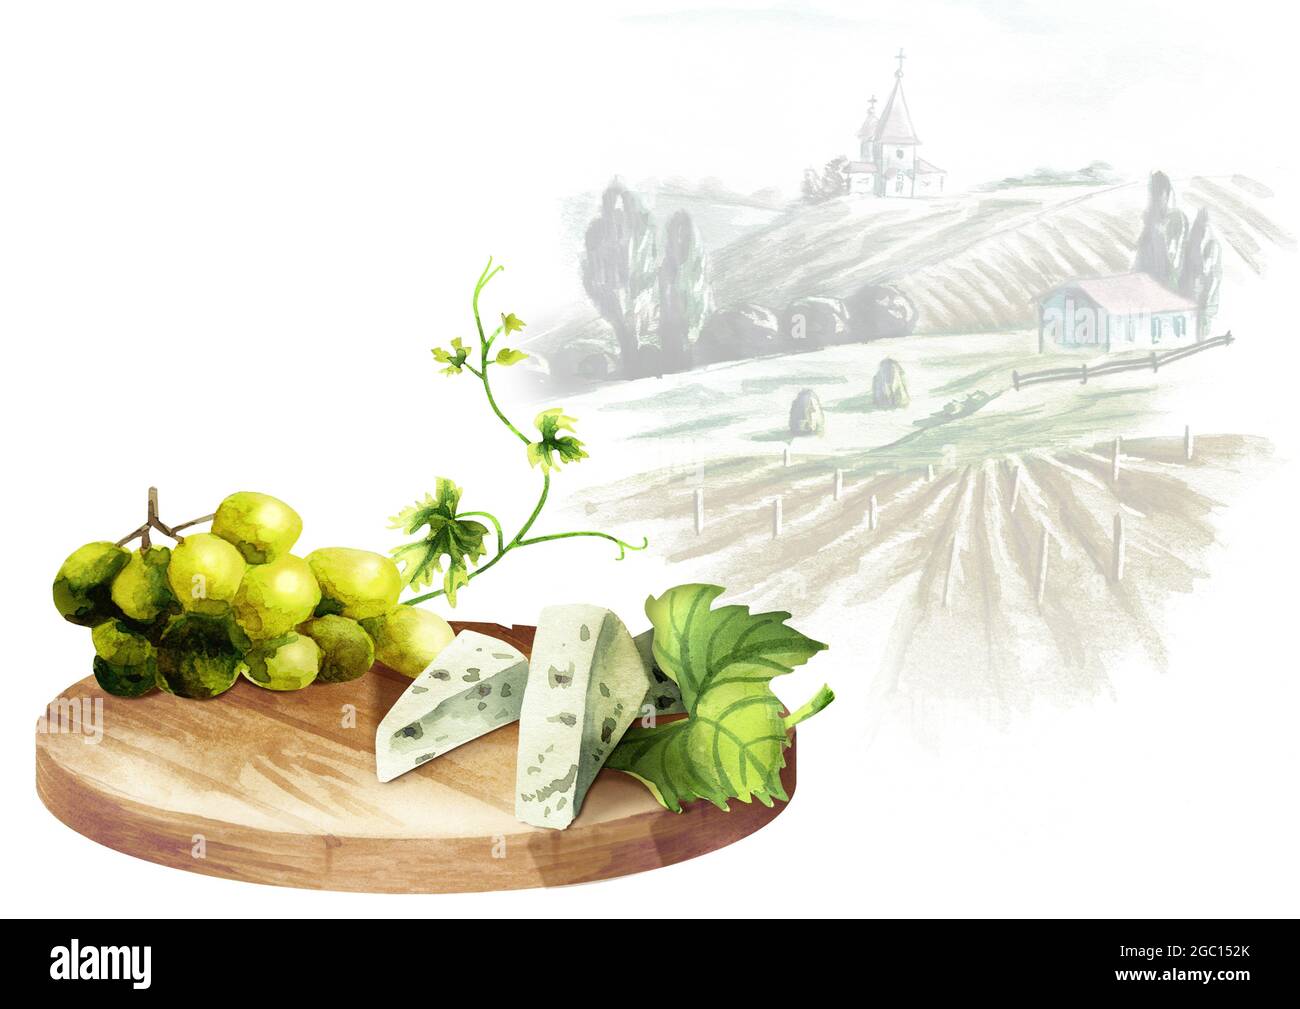 Hintergrund für Ihre Produkte mit einem Tisch, Trauben und Landschaft Stockfoto